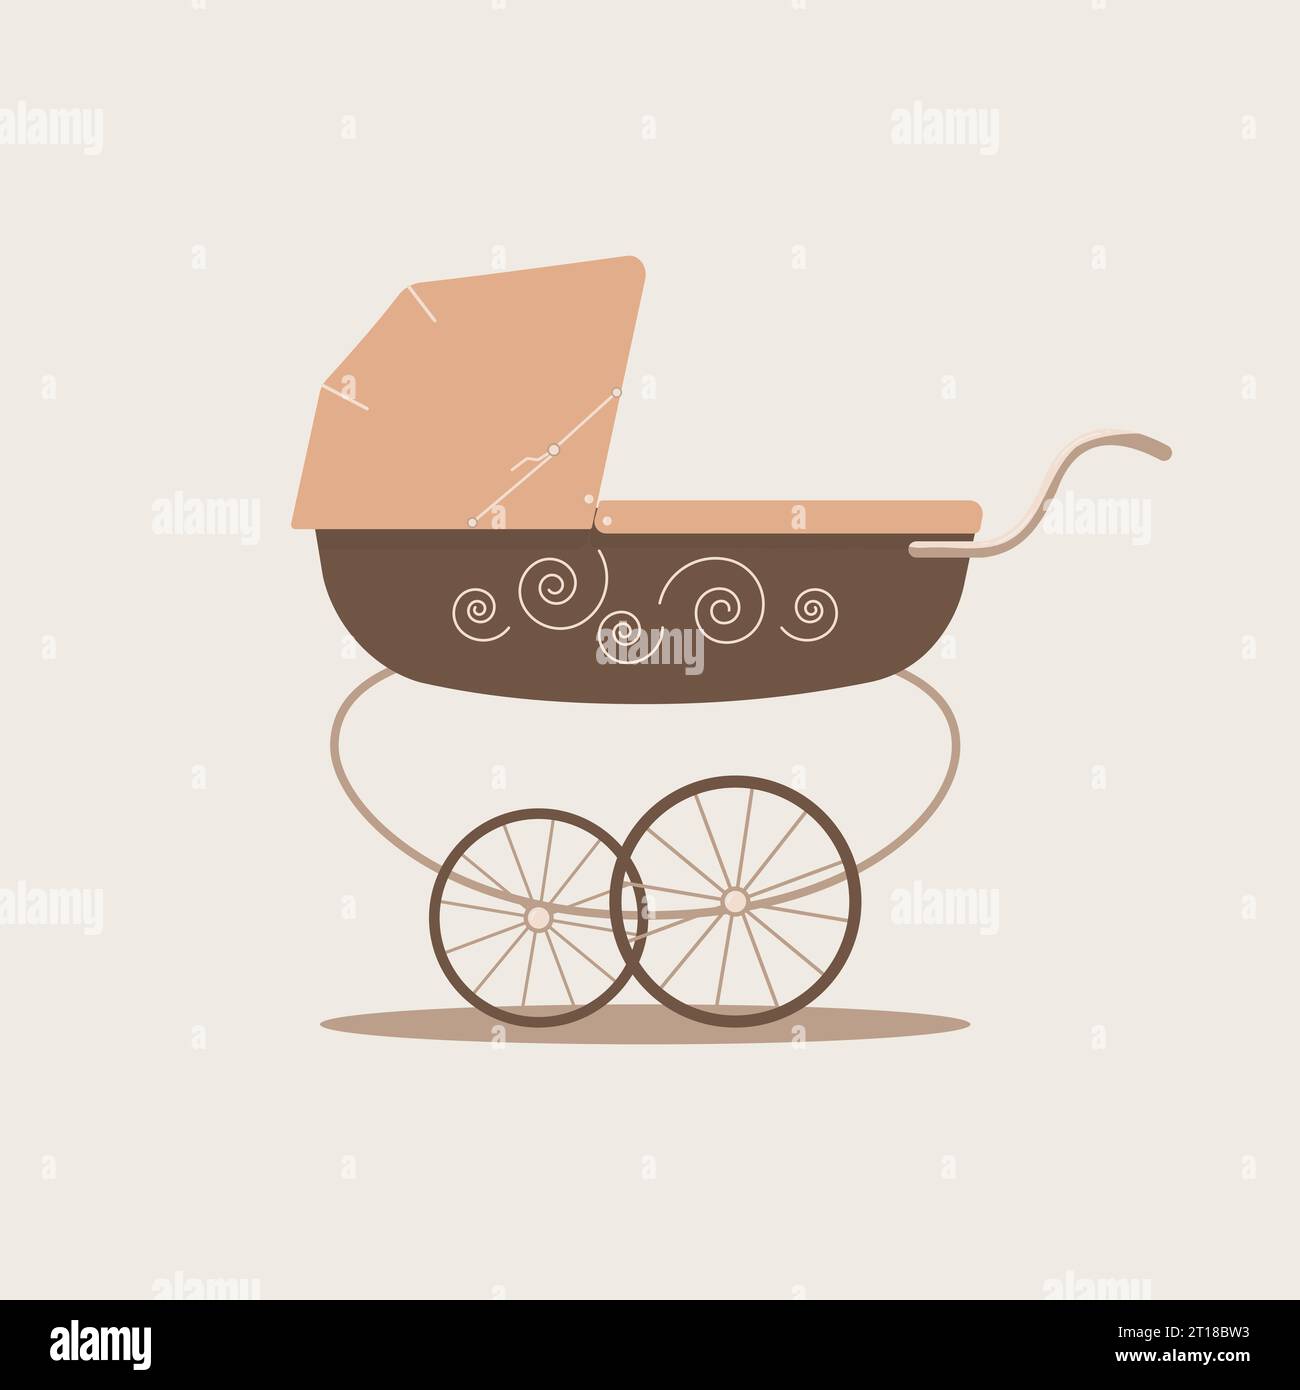 Poussette de bébé unisexe de luxe mignon dans des couleurs beige et marron sur fond clair. Transport pour prendre soin des nourrissons et des promenades.Vector illustration plate Illustration de Vecteur